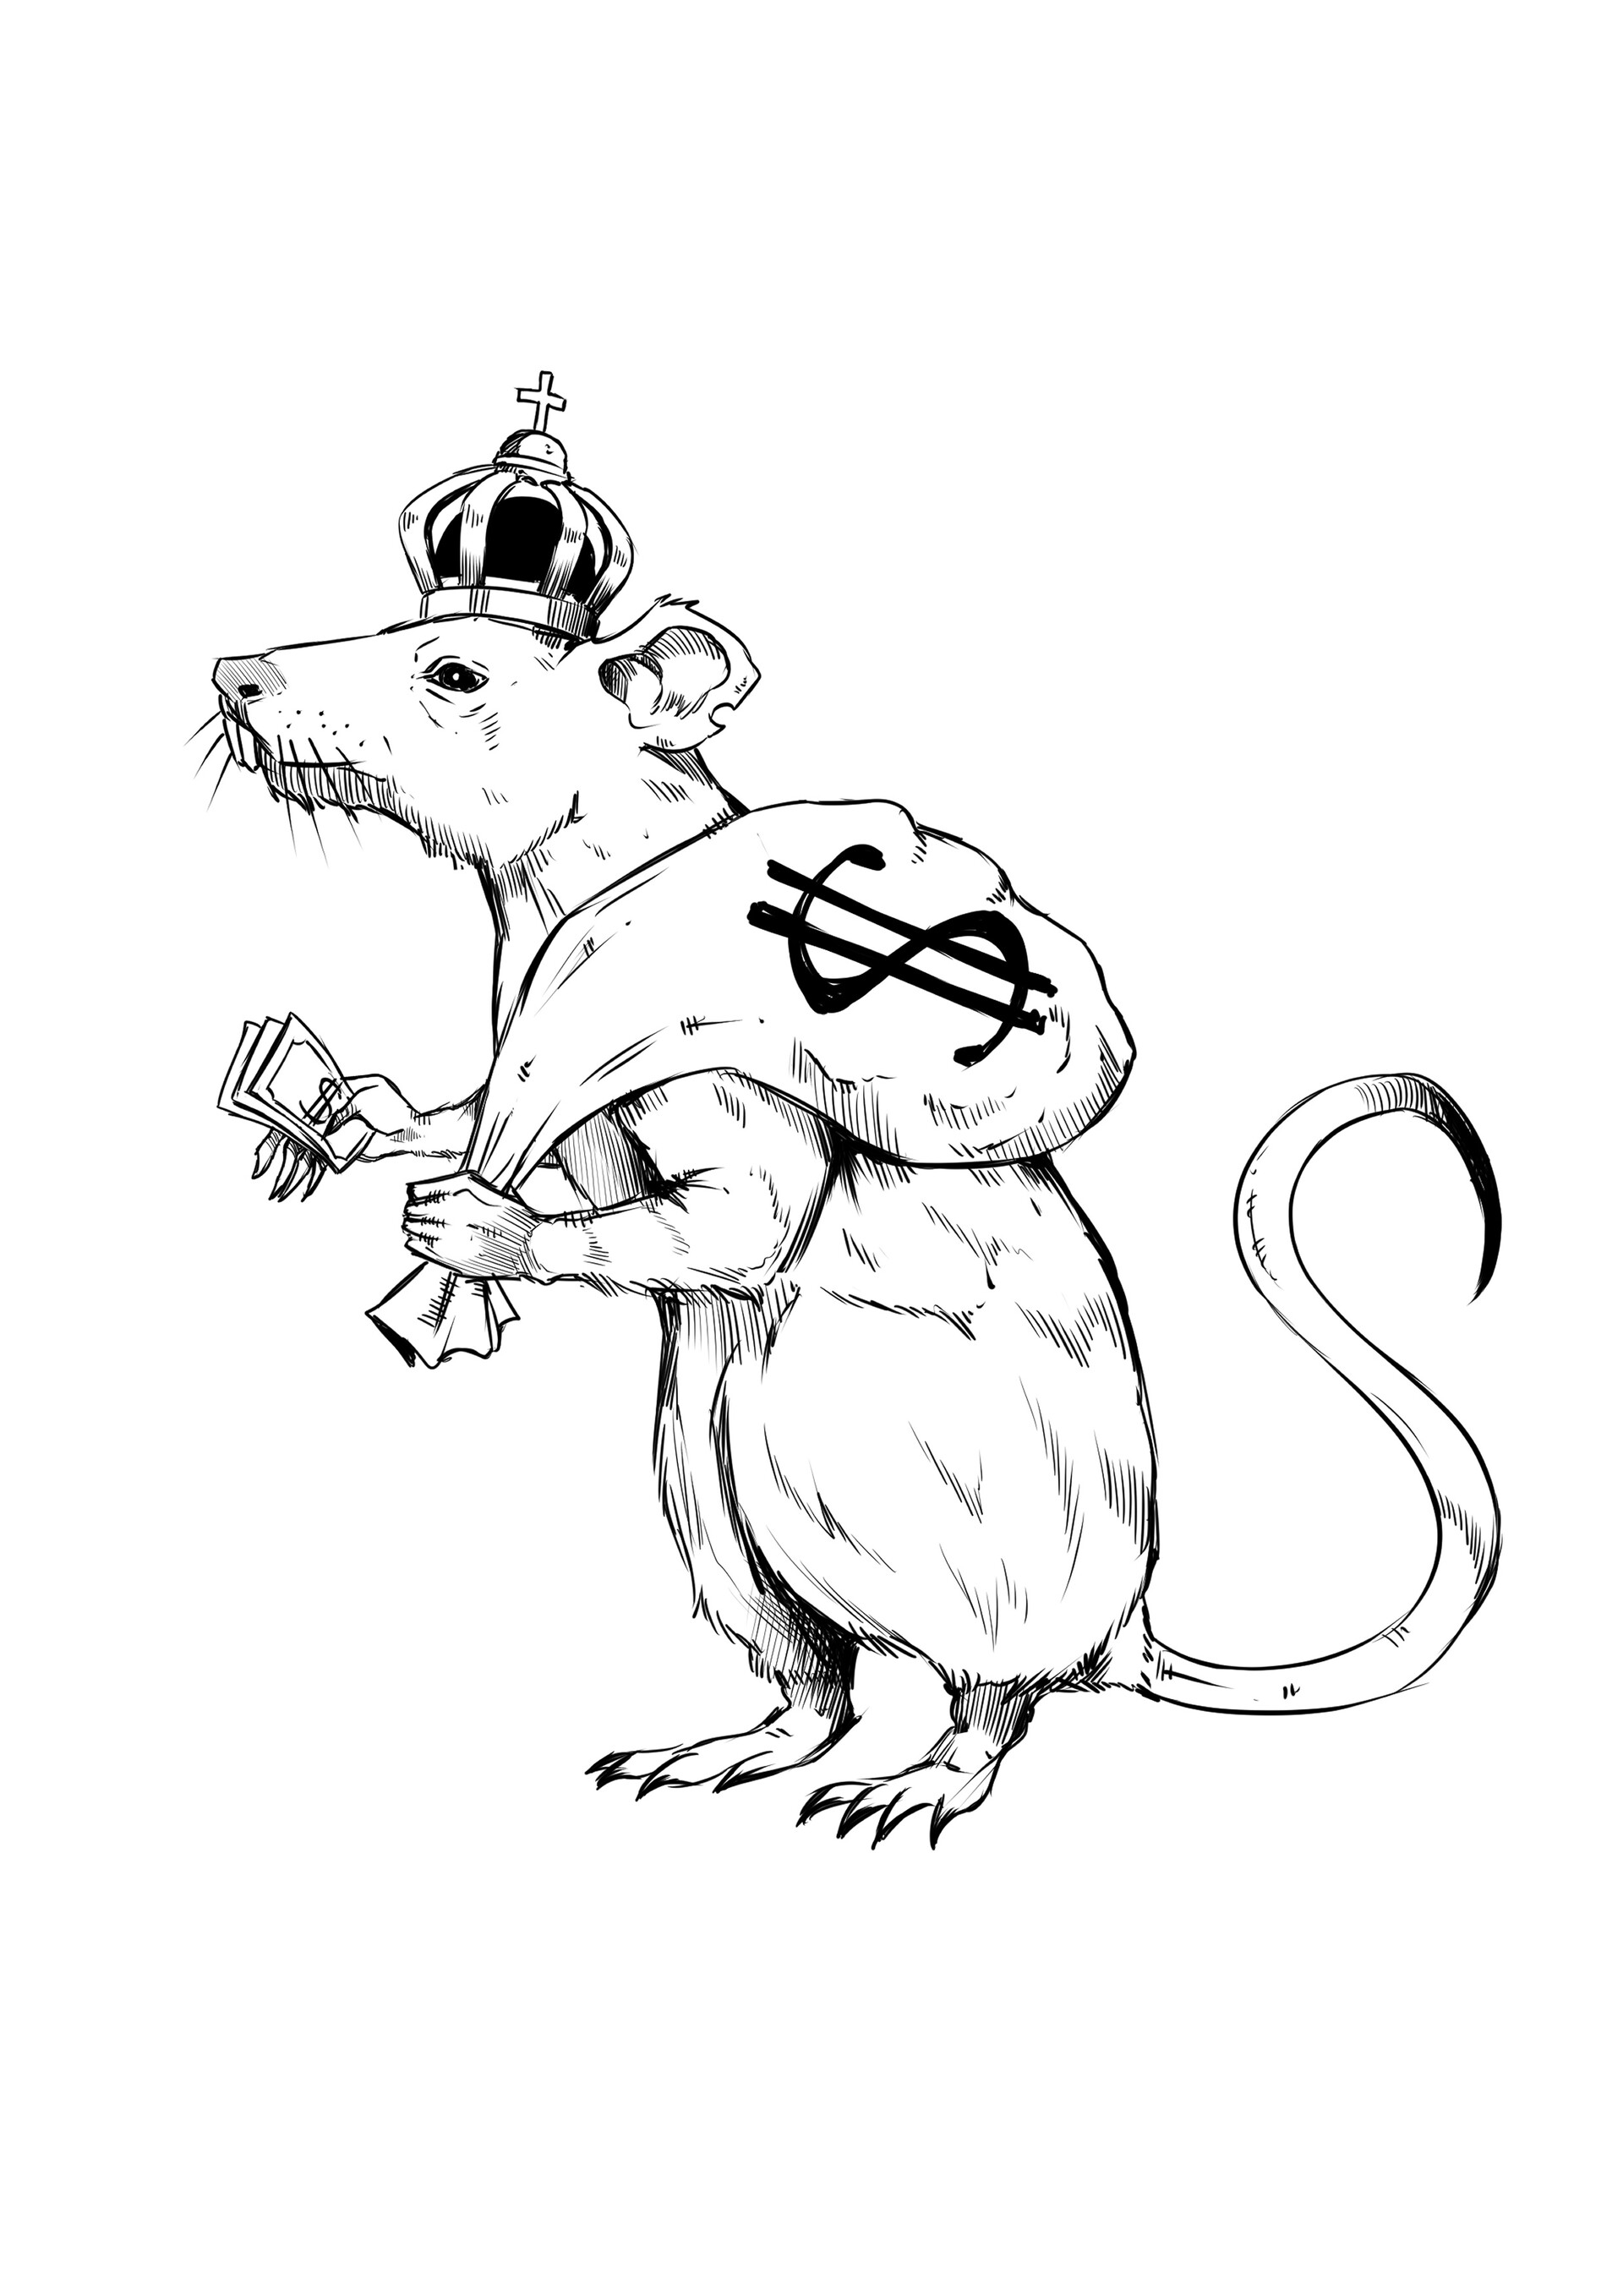 Rat King Tattoo